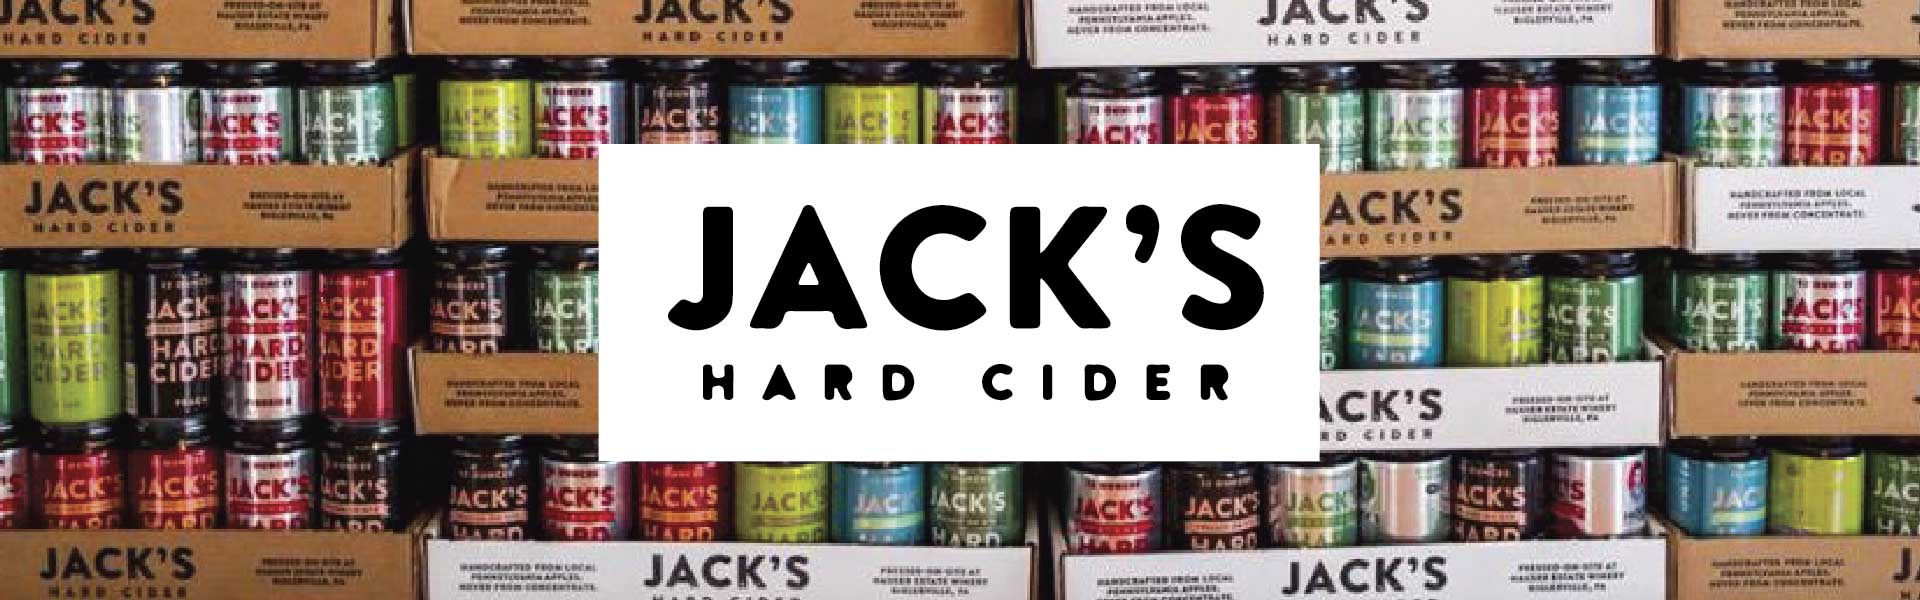 Jack's Hard Cider